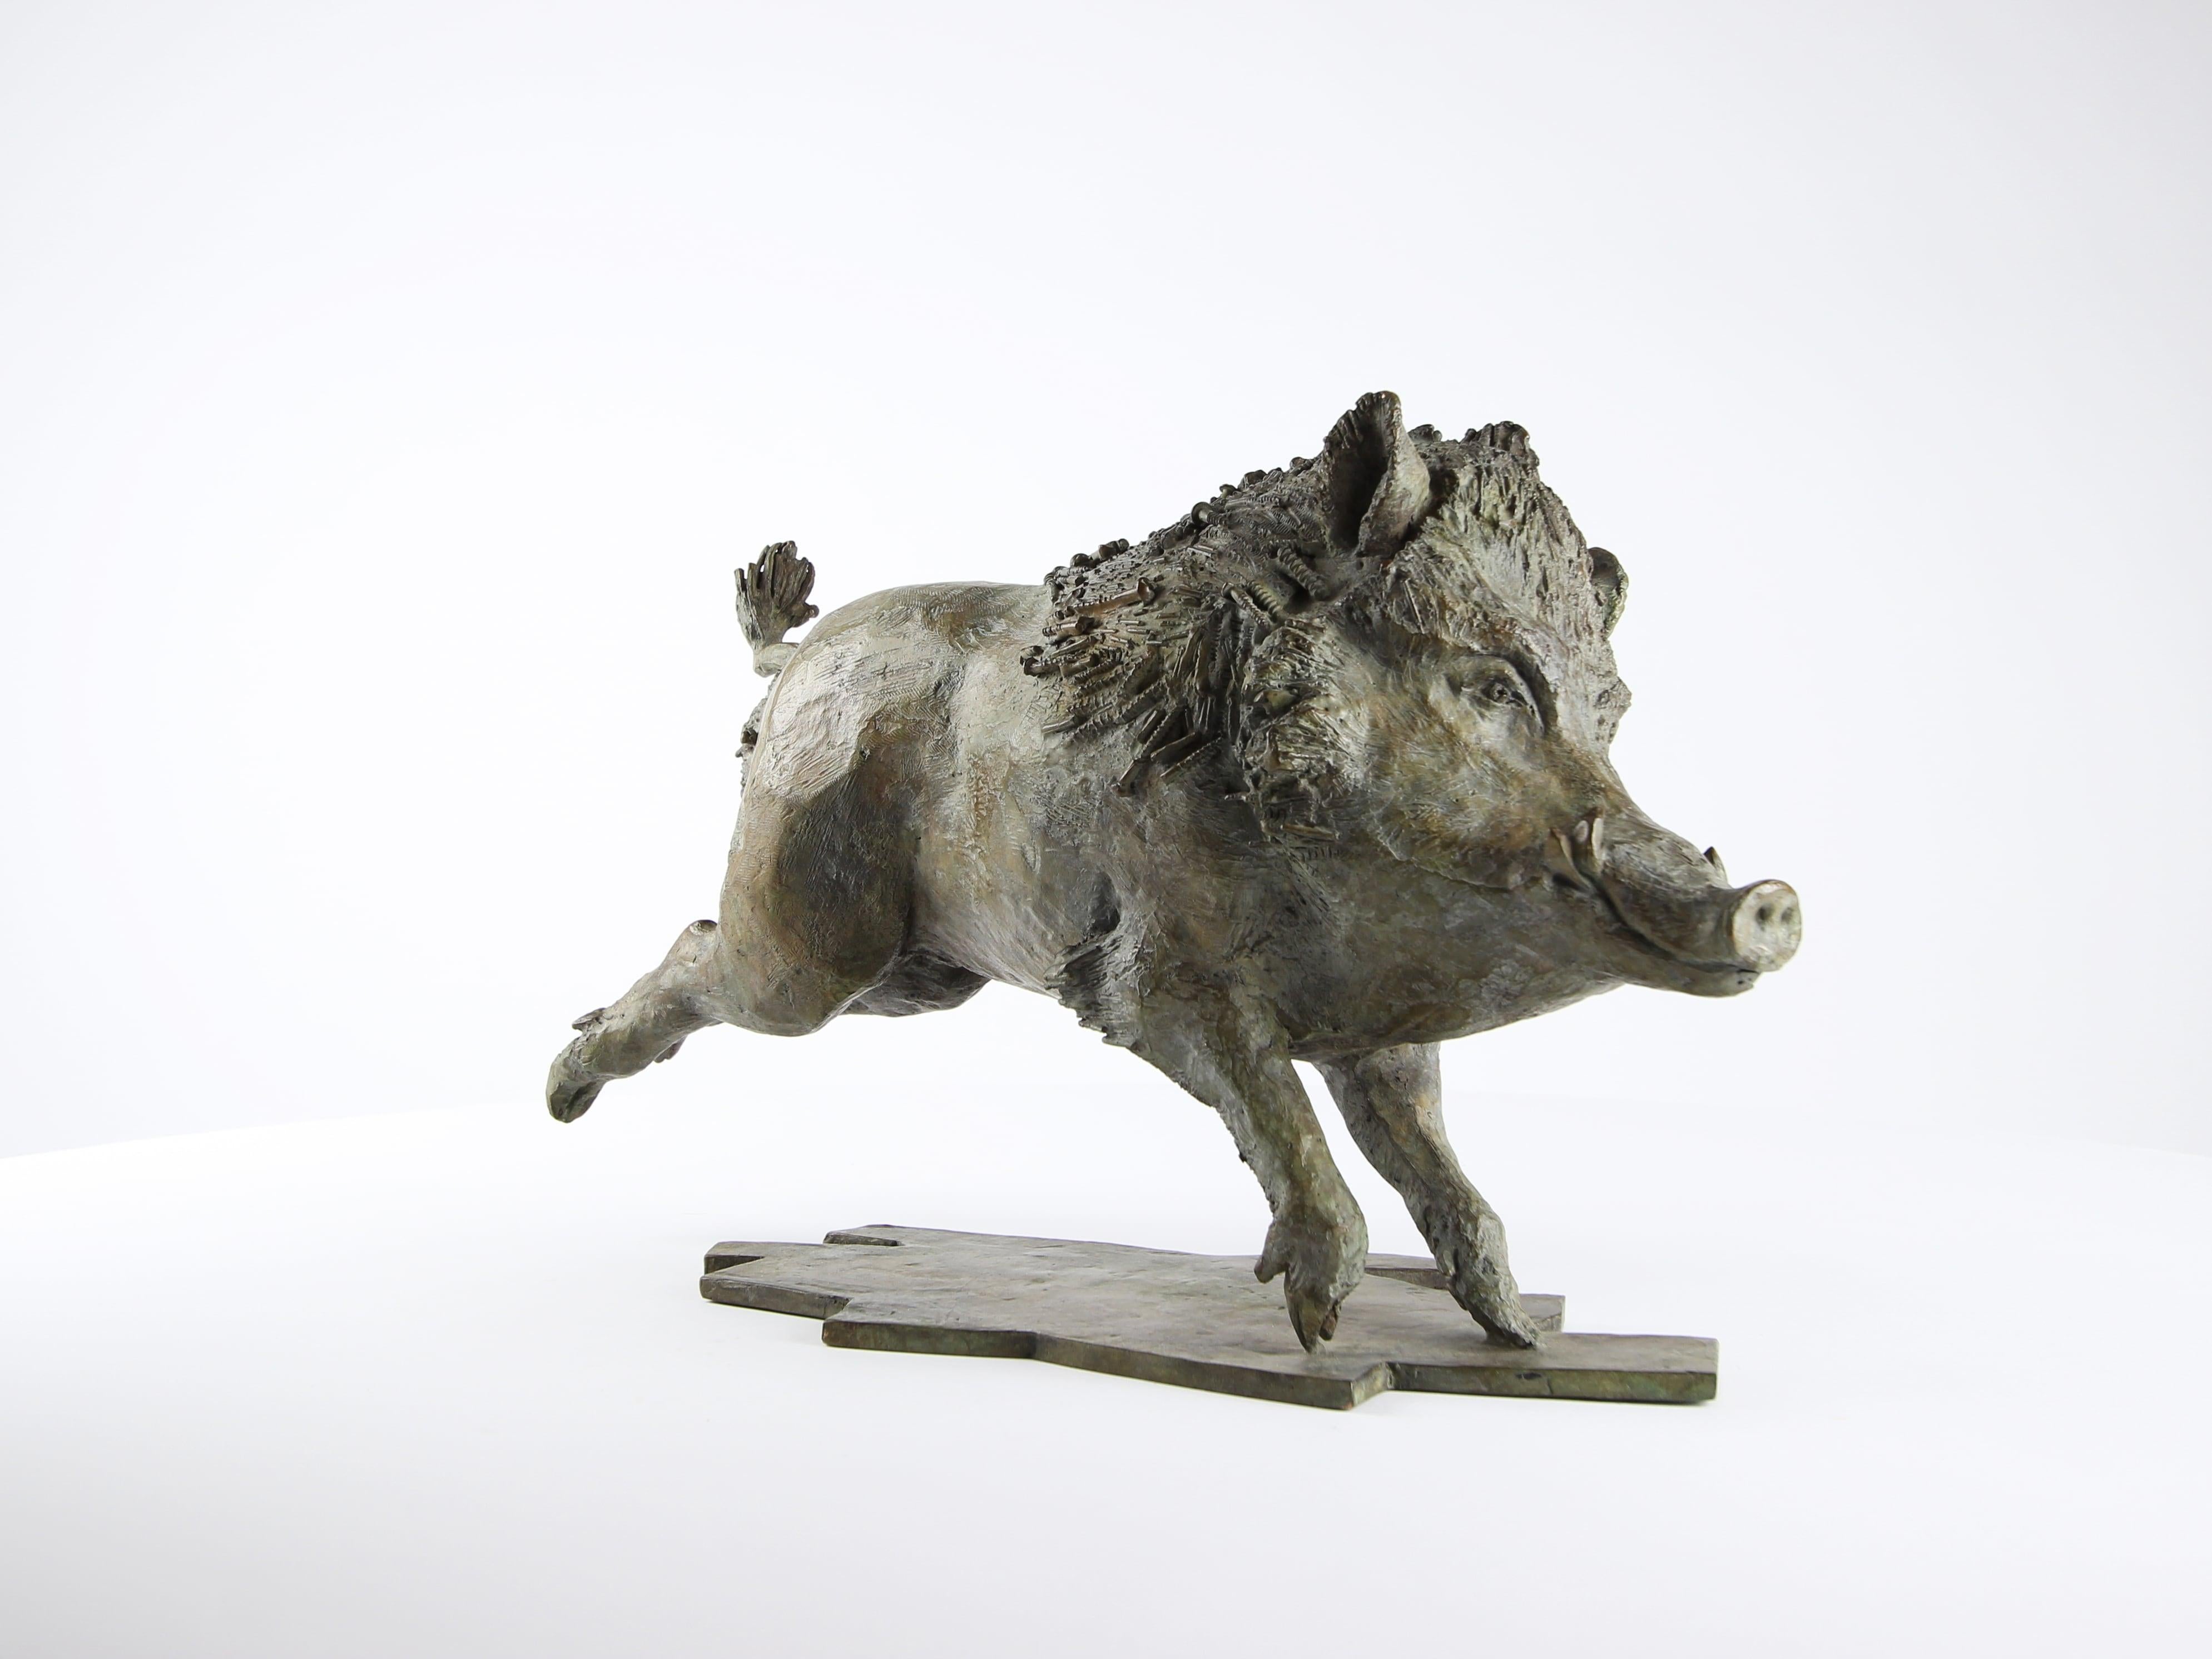 Wild Boar by Chésade - bronze sculpture, animal art